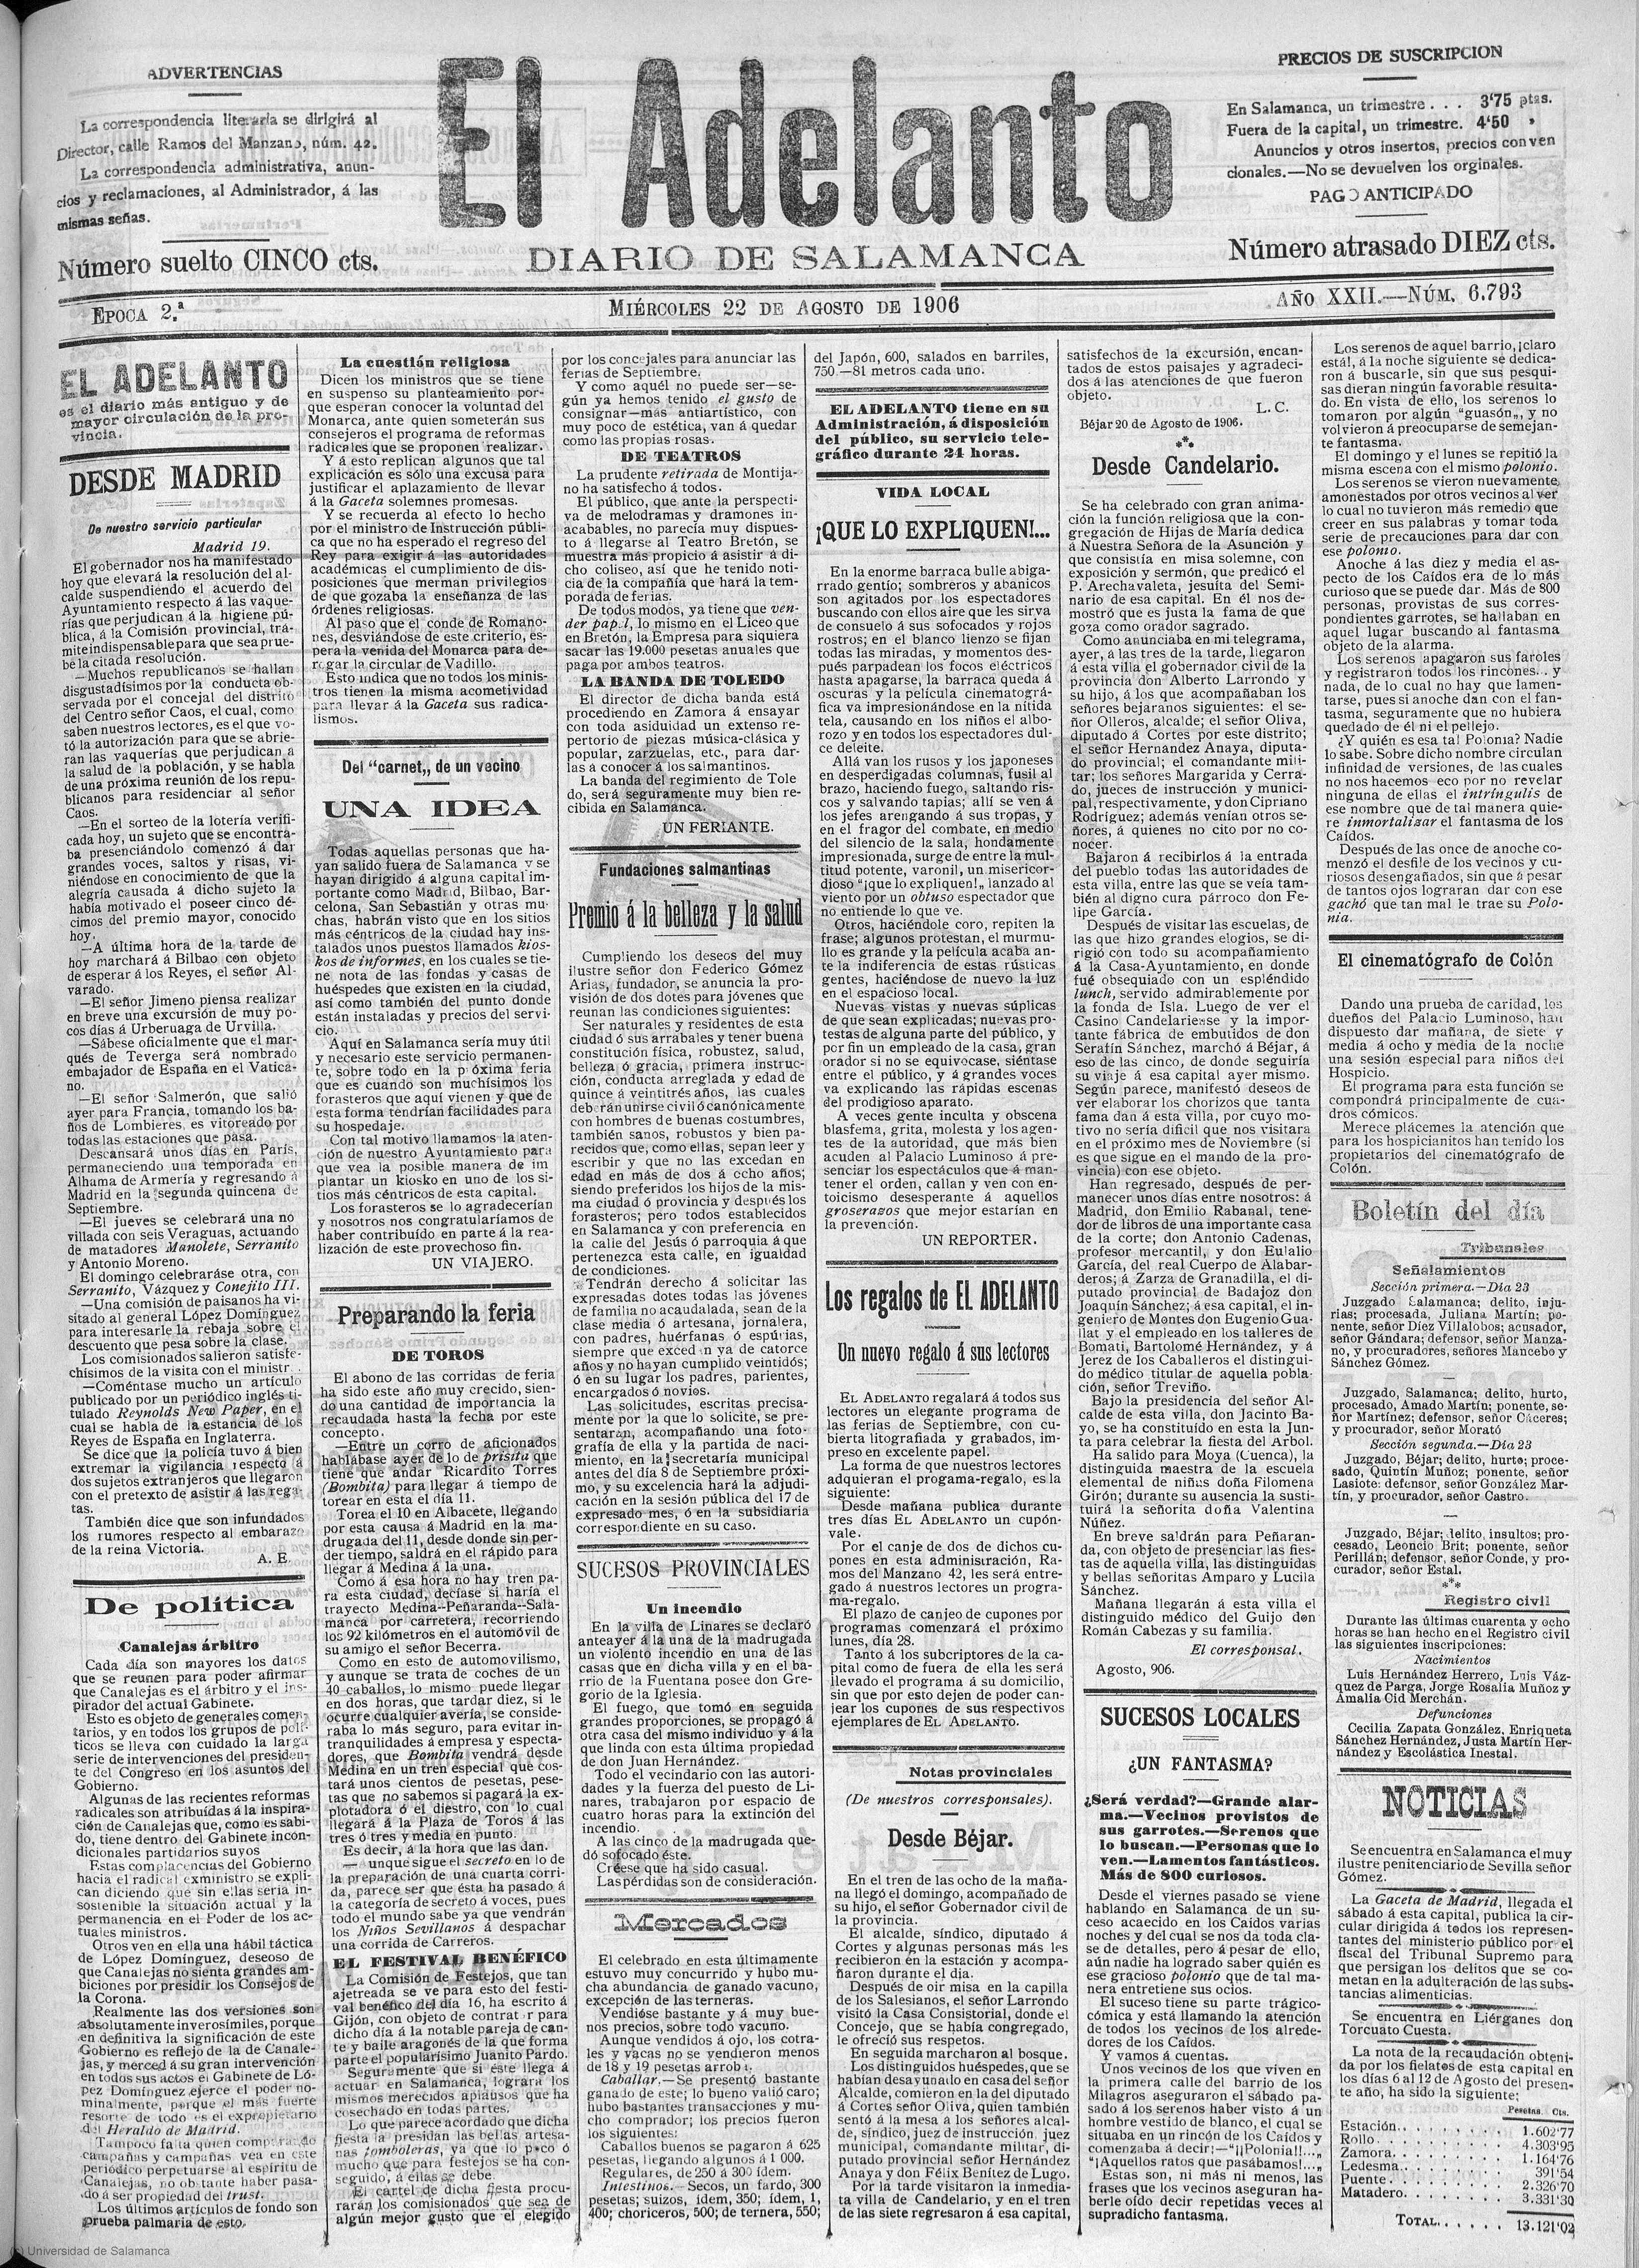 Recorte de prensa, 22 de agosto de 1906